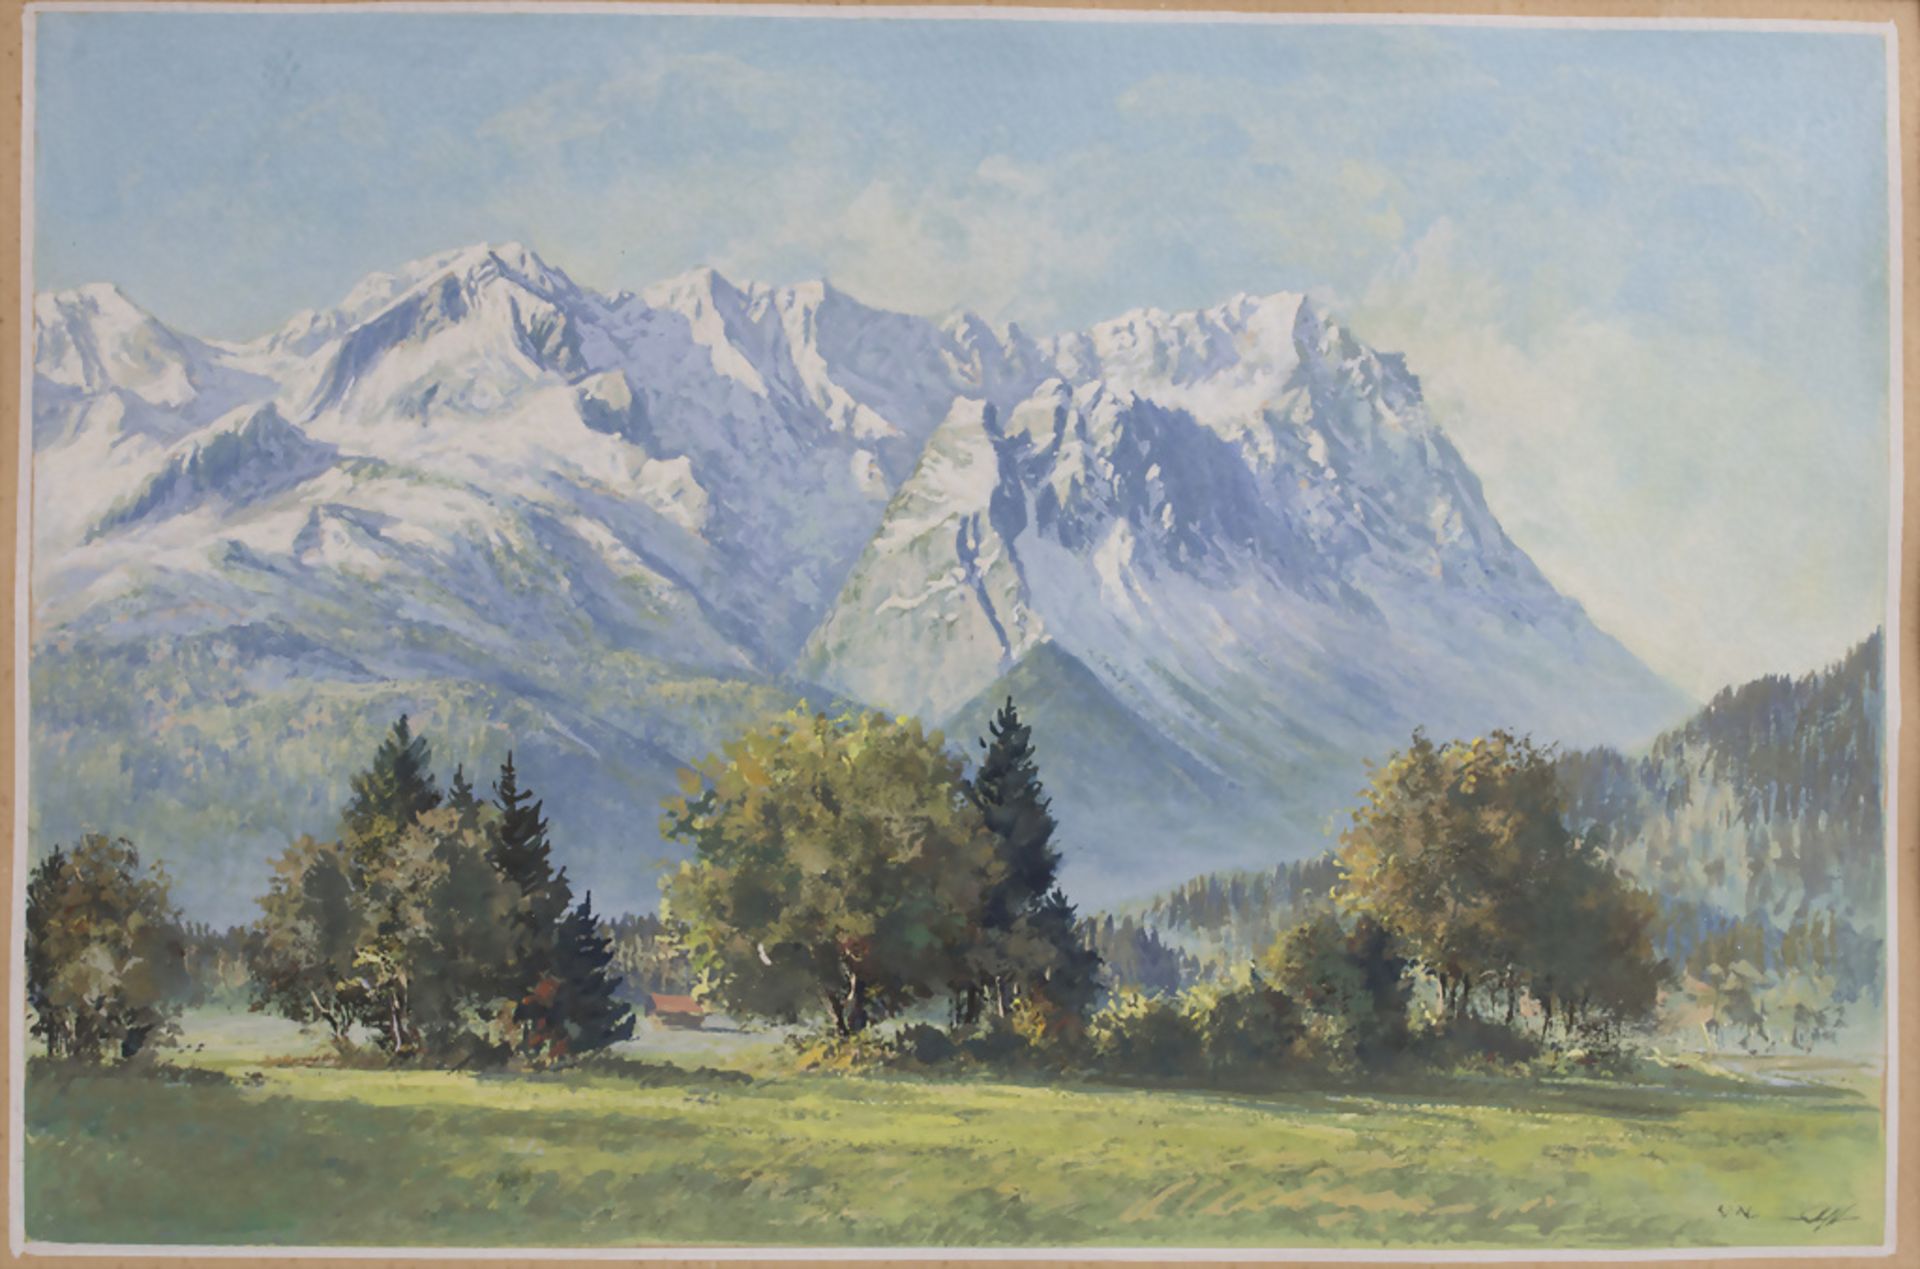 Blick auf Zugspitzmassiv / View on the Zugspitze, unleserlich signierender Künstler, Mitte 20. Jh.